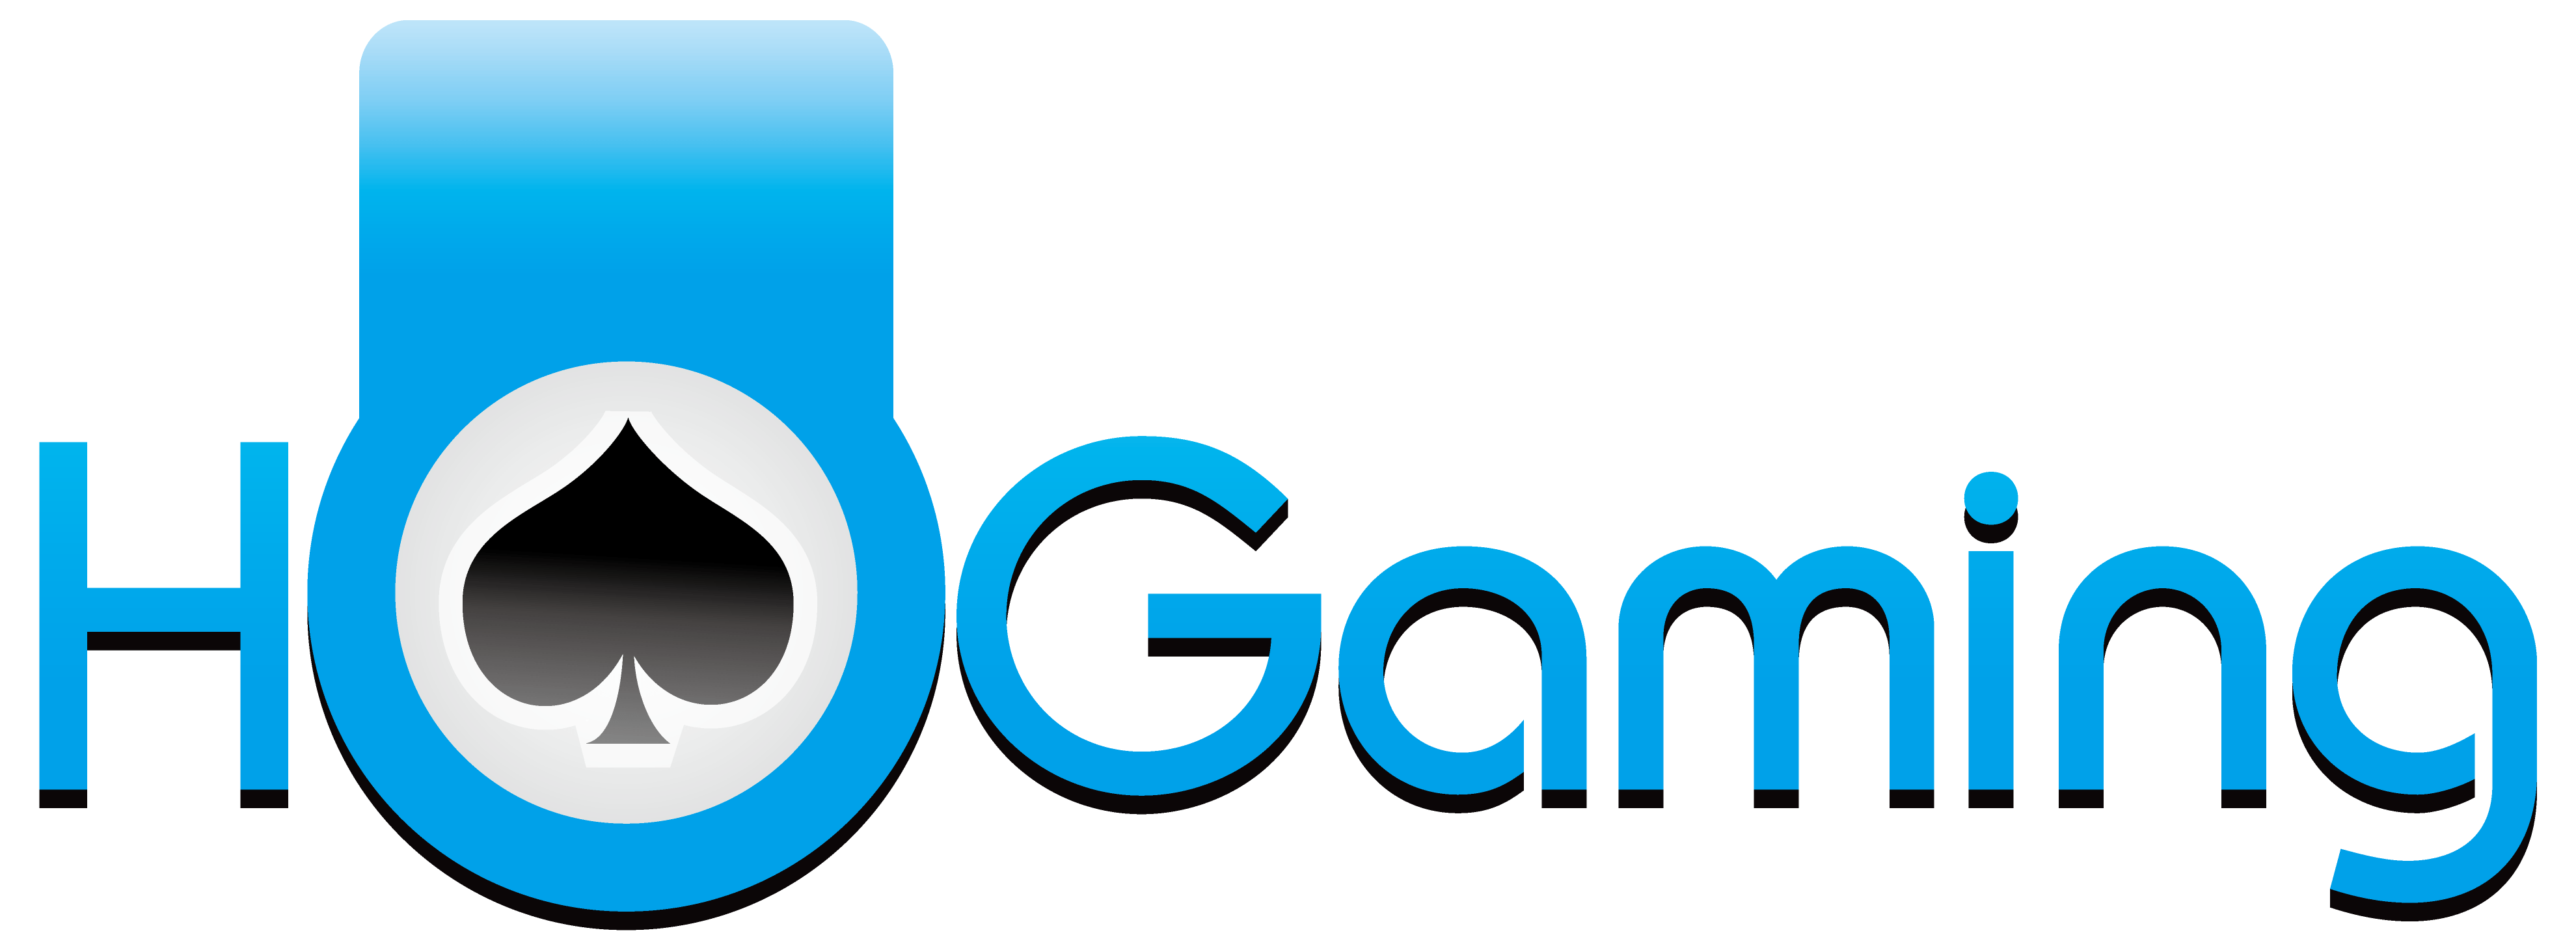 HoGaming logo - online casino software provider - Online casino singapore